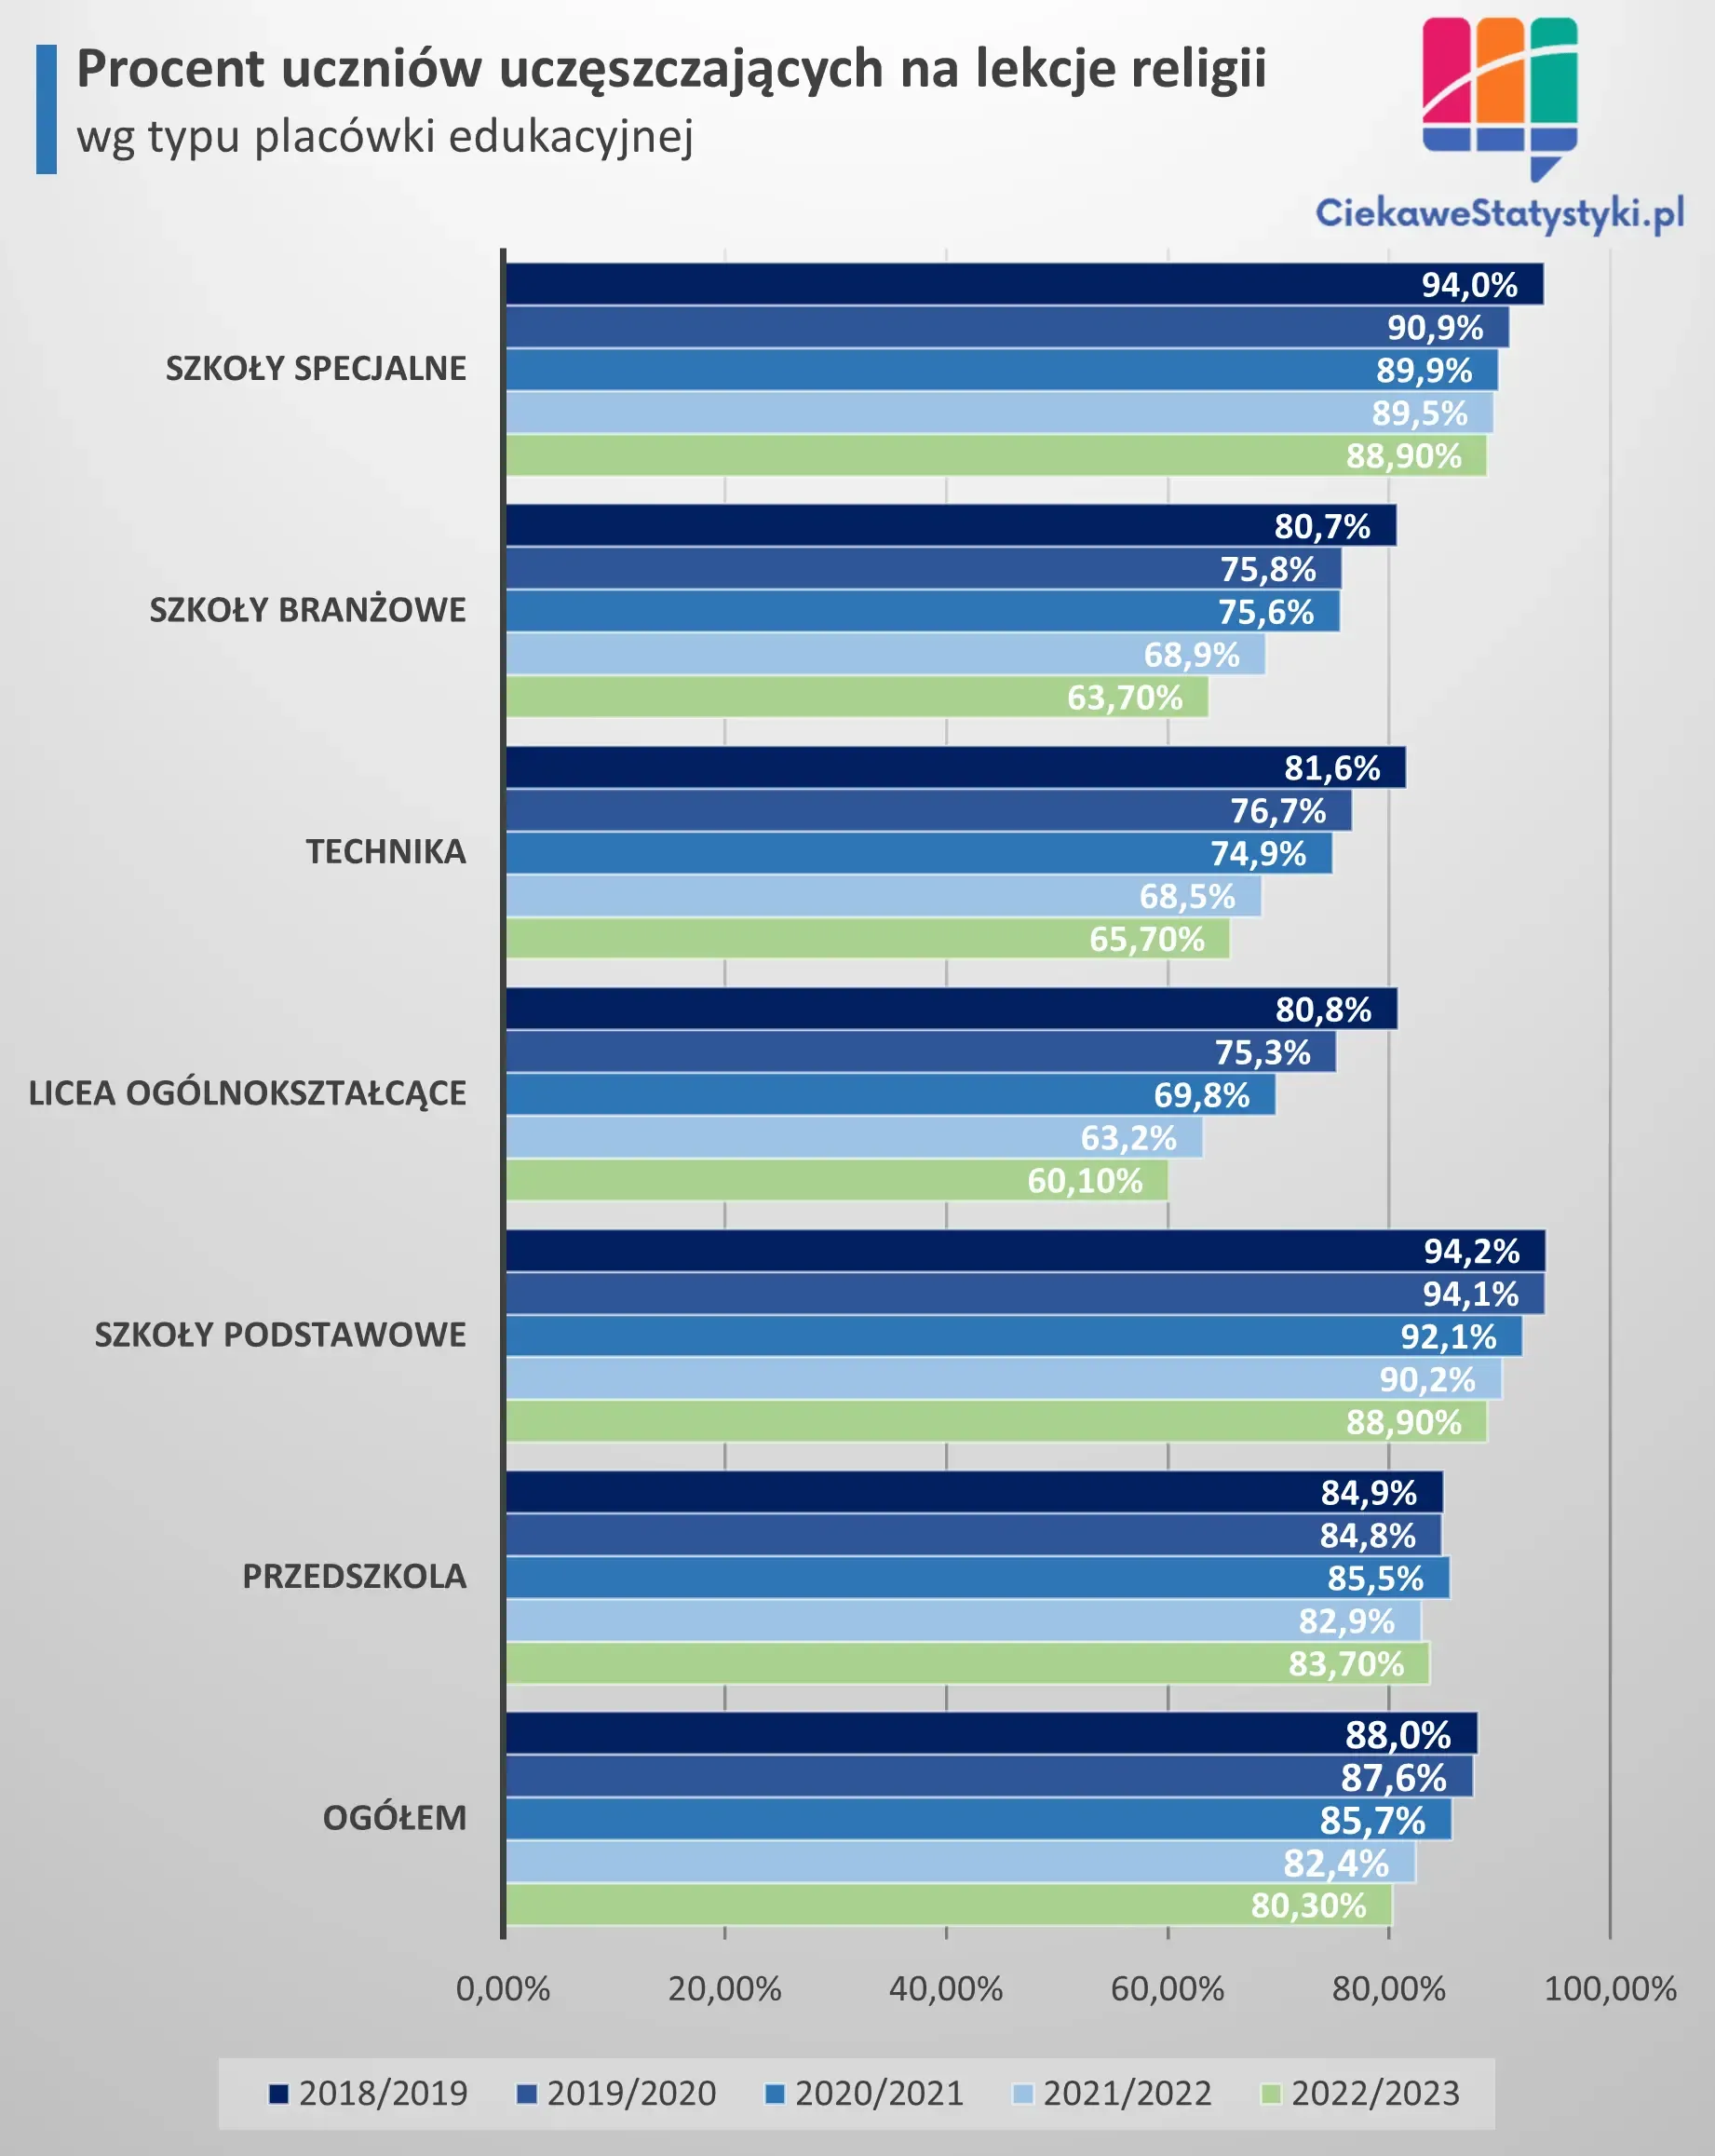 Wykres pokazuje jaki odsetek uczniów w Polsce uczęszcza na lekcje religii